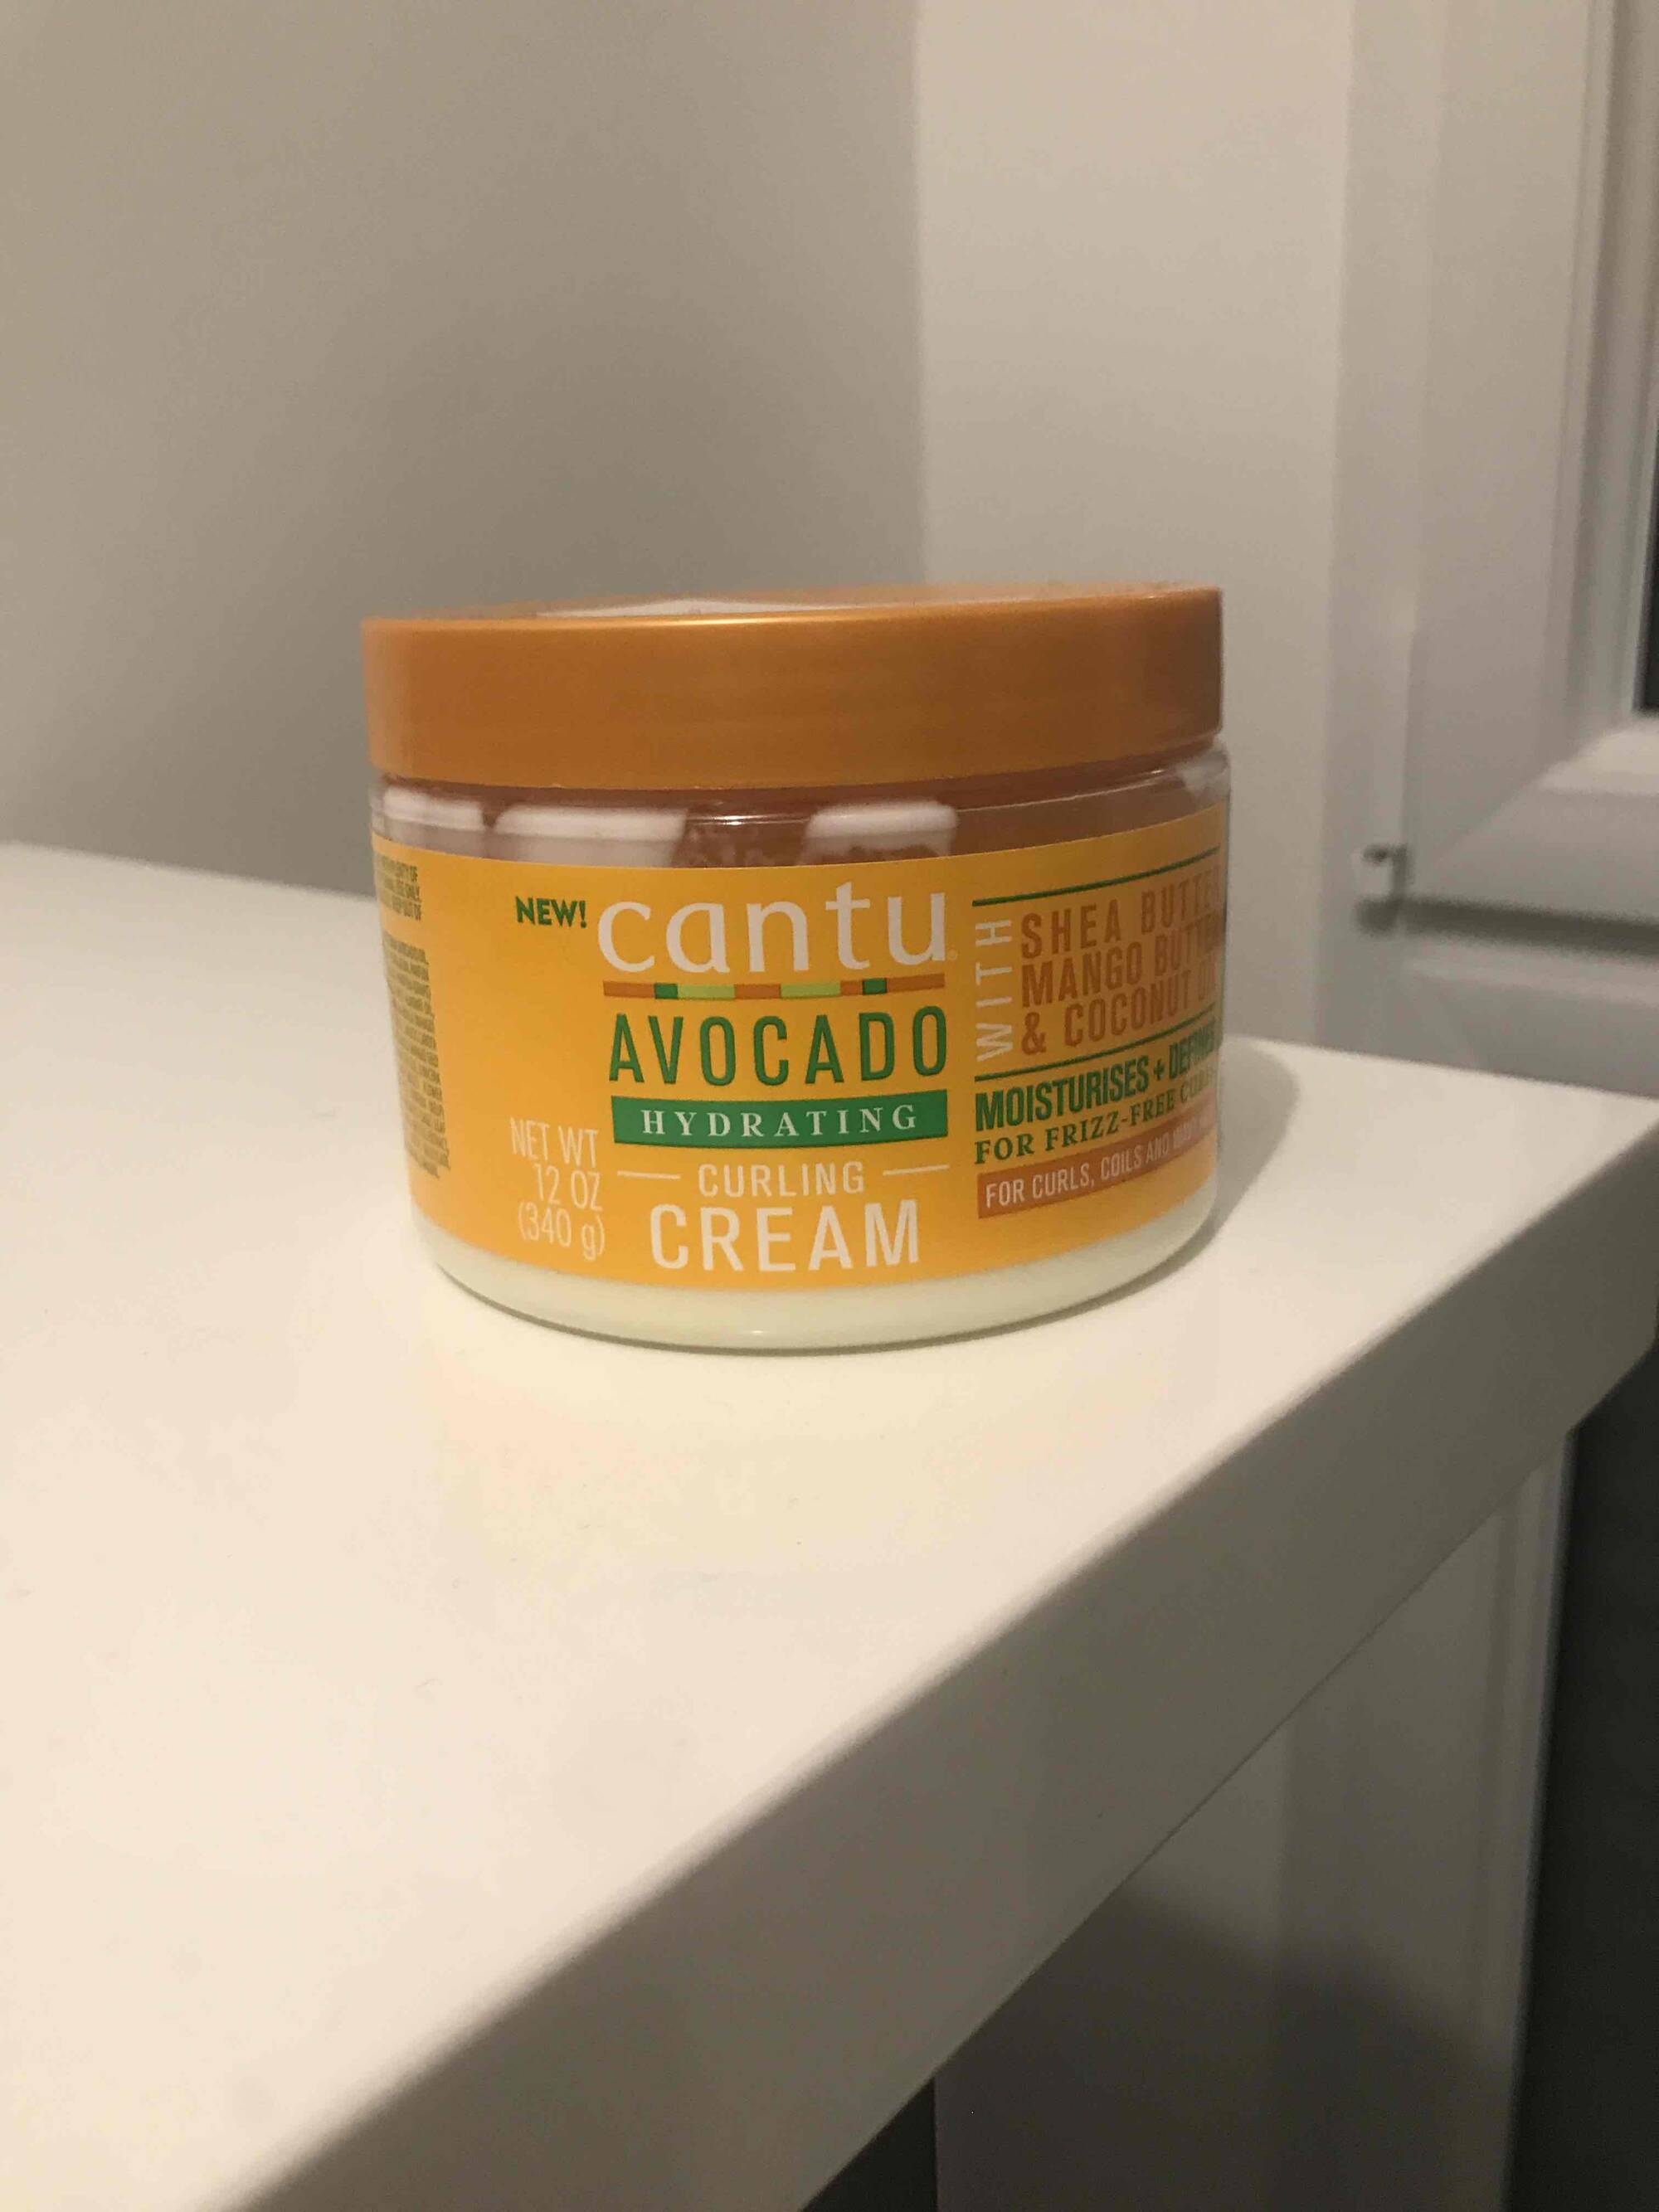 CANTU - Avocado - Curling cream 